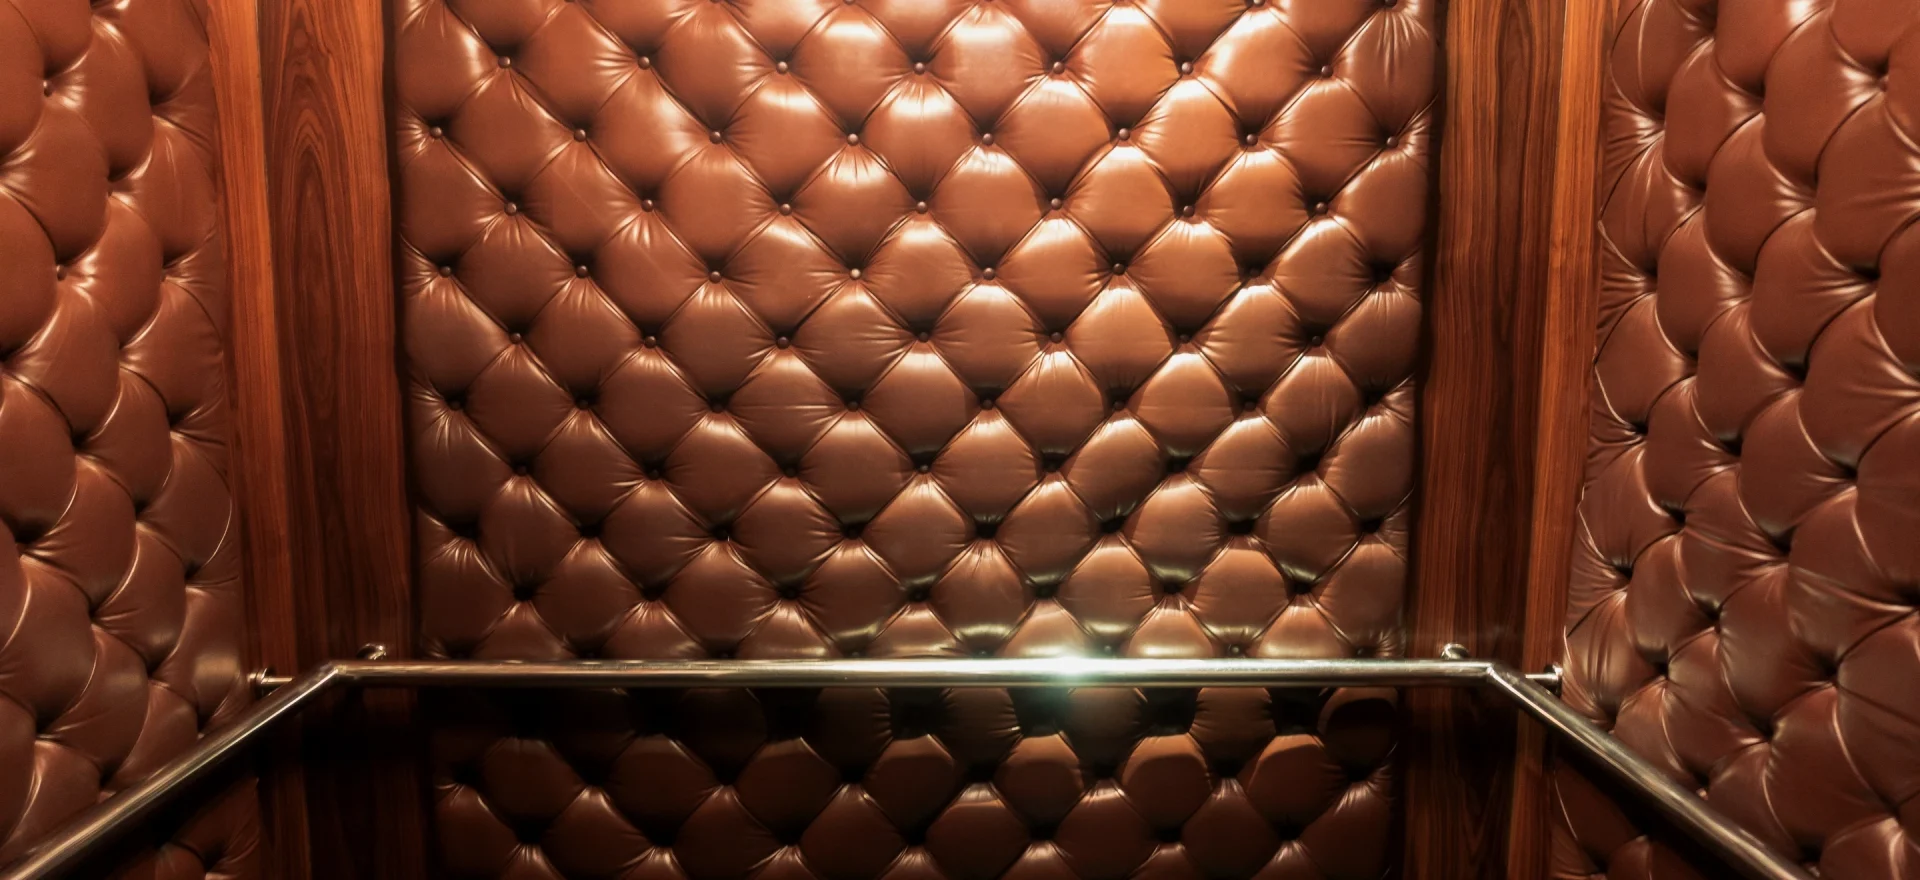 En hisskorg med smidiga väggar klädda i mjukt brun läder. En elegant interiör som ger en lyxig och bekväm hissupplevelse.